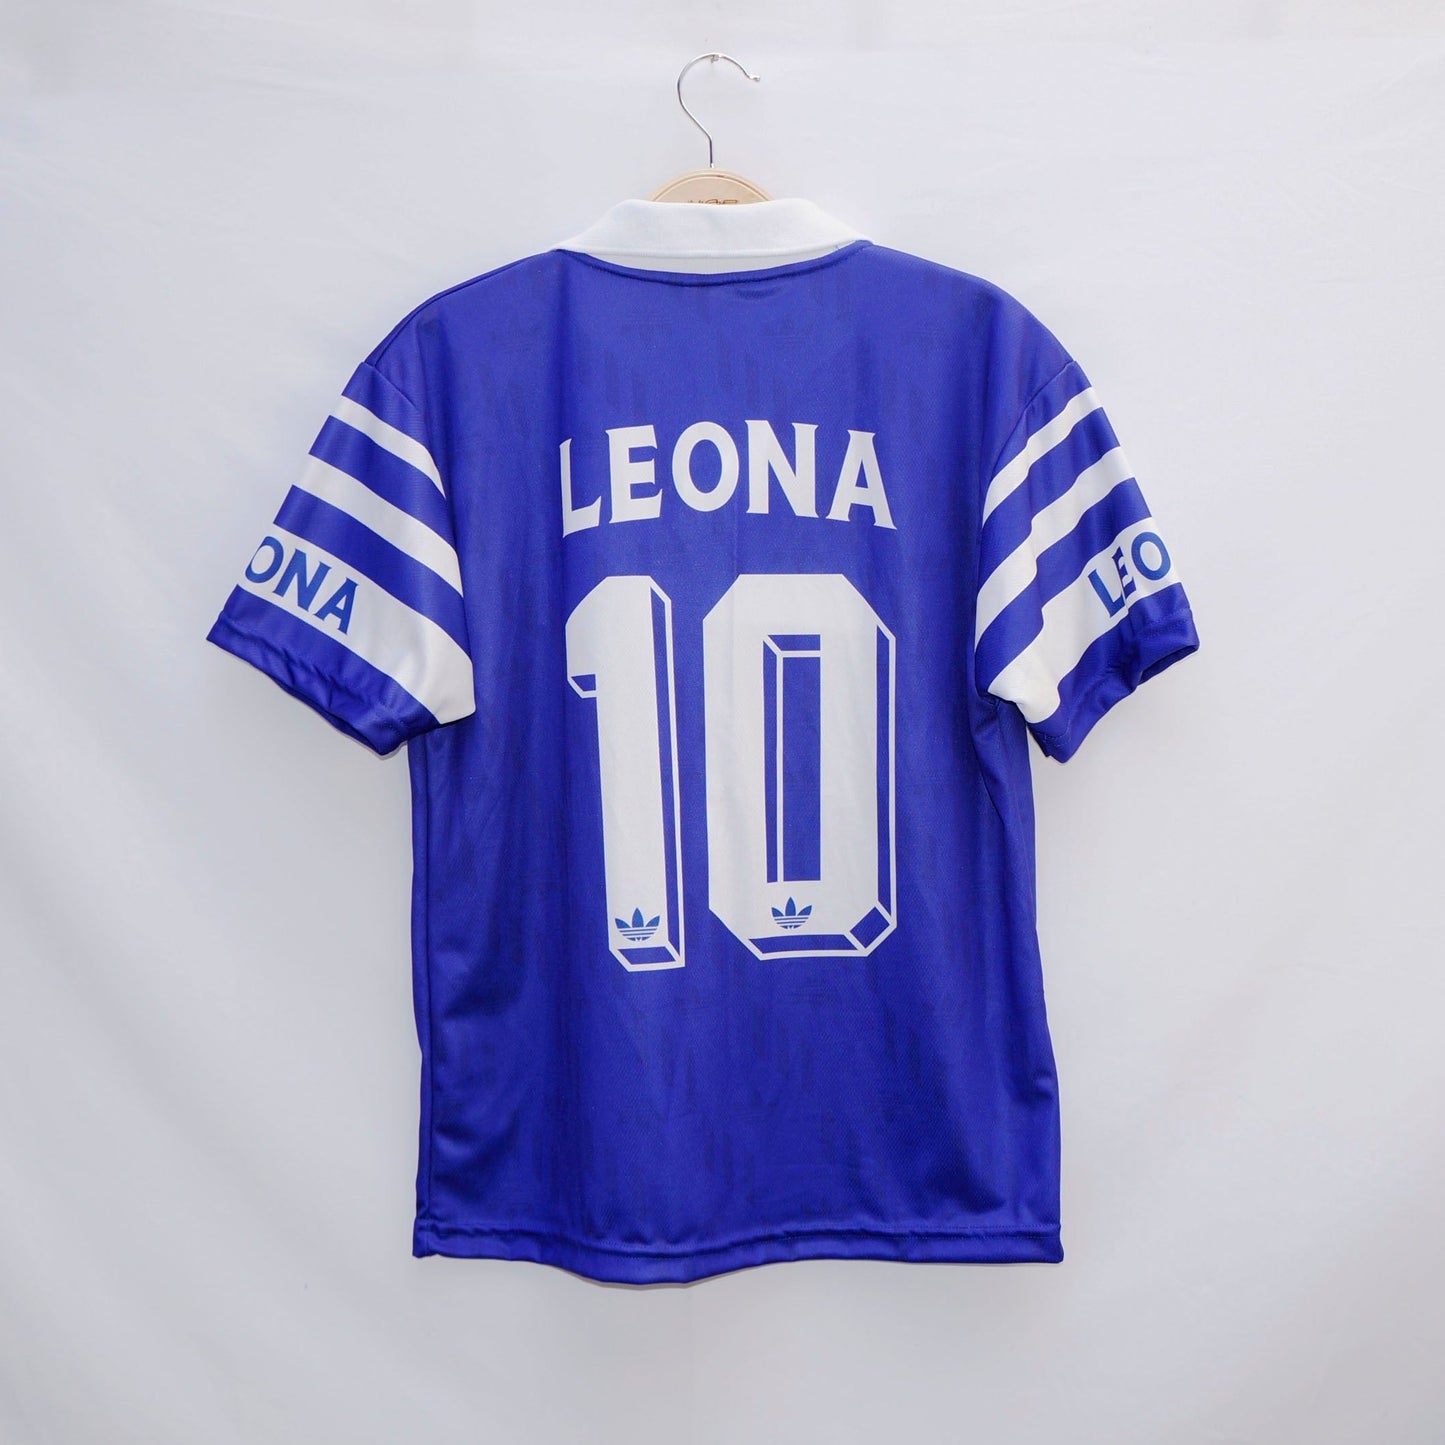 Leona 1996 Millionaires T-shirt